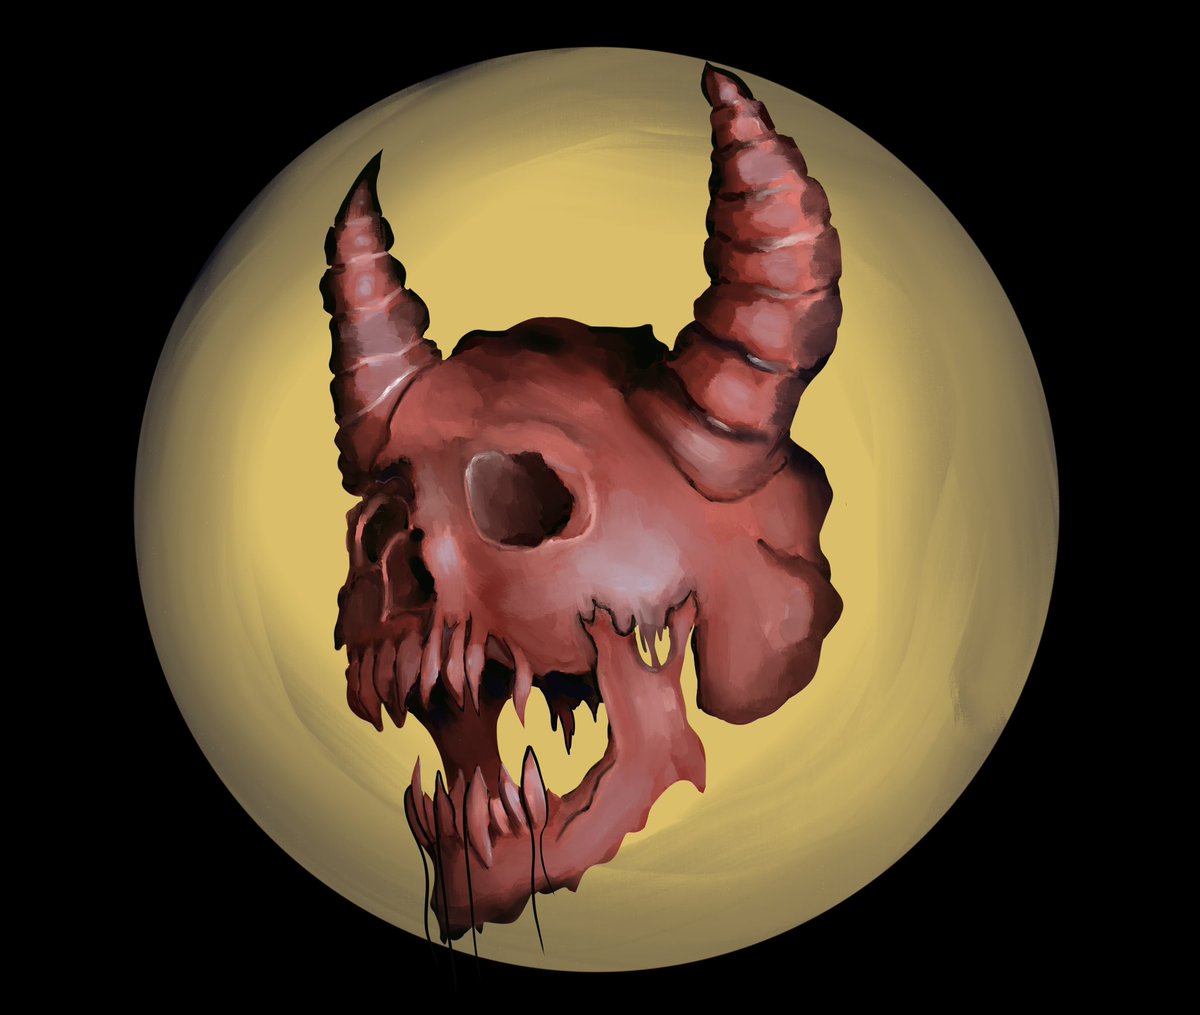 I loved drawing this on stream #art #Digital #digitalart #skull #demon #demonart #skullart